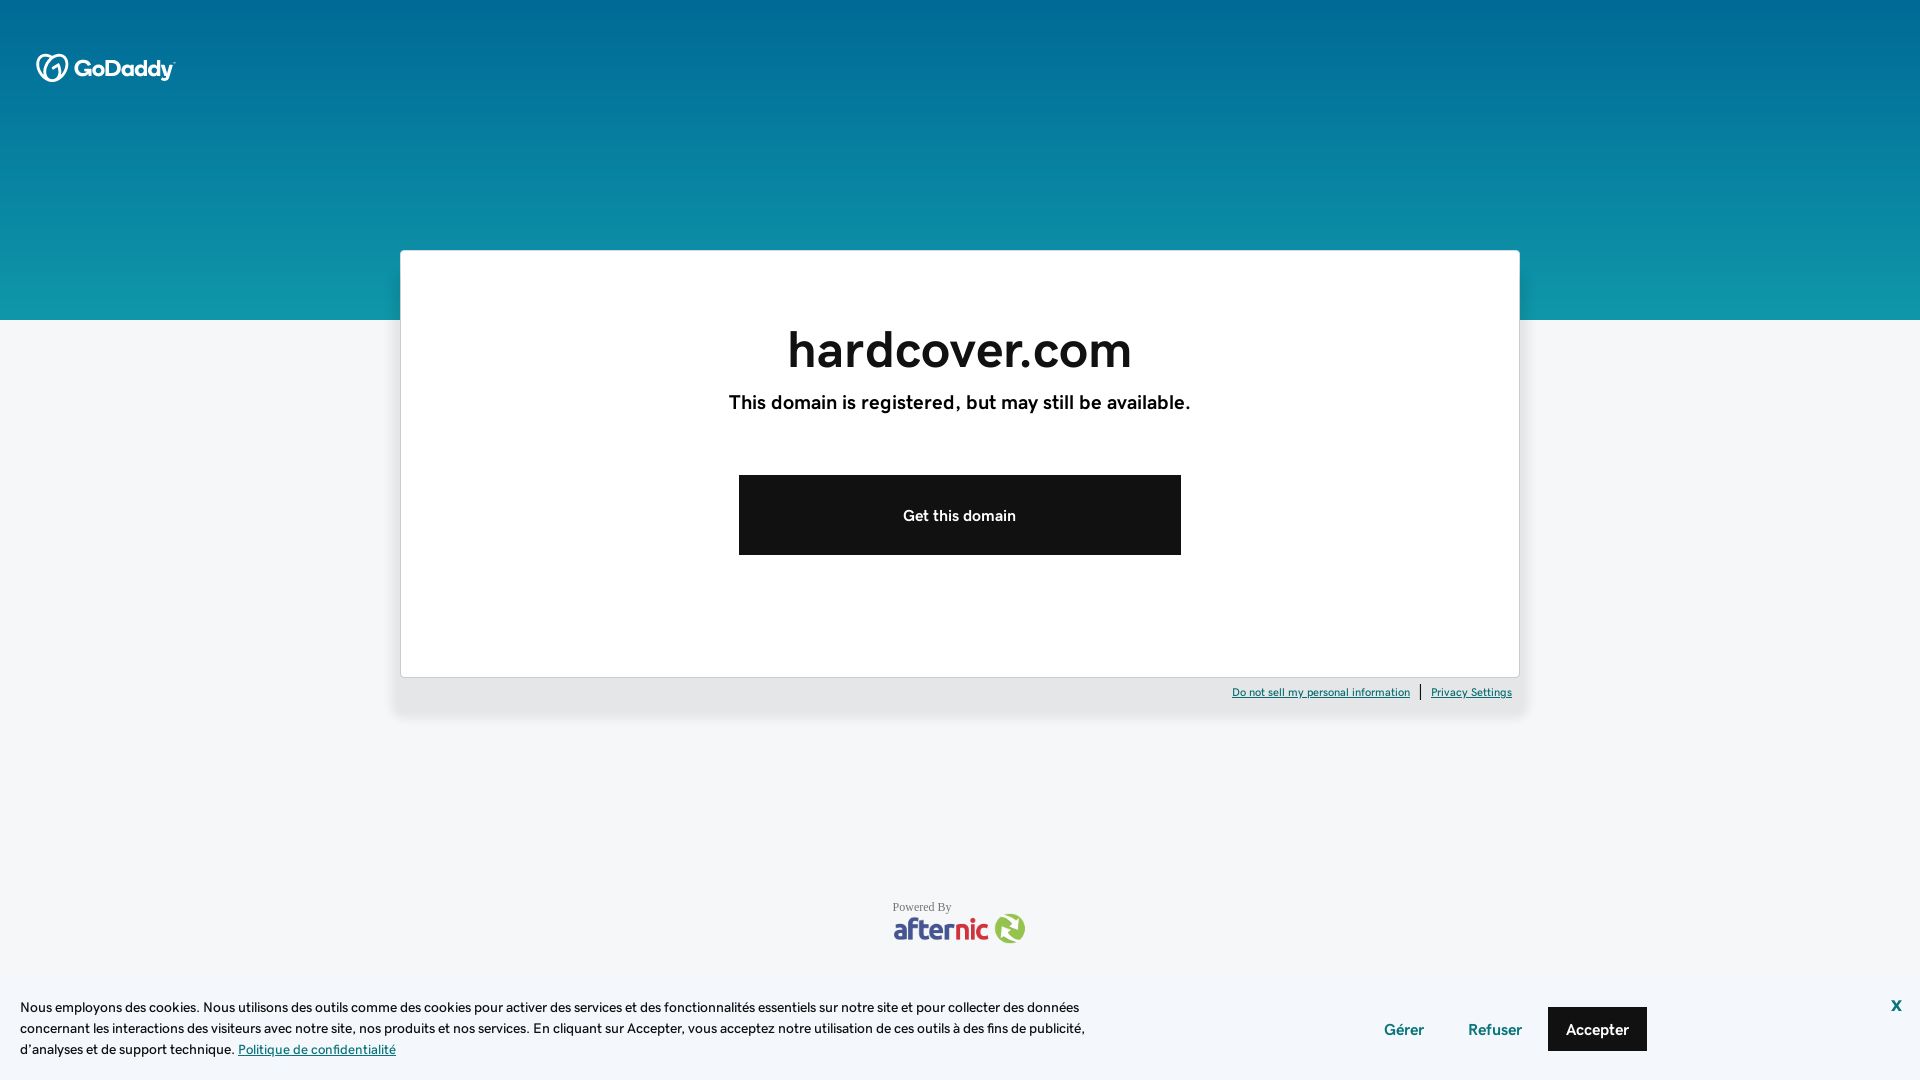 Website status hardcover.com is   ONLINE